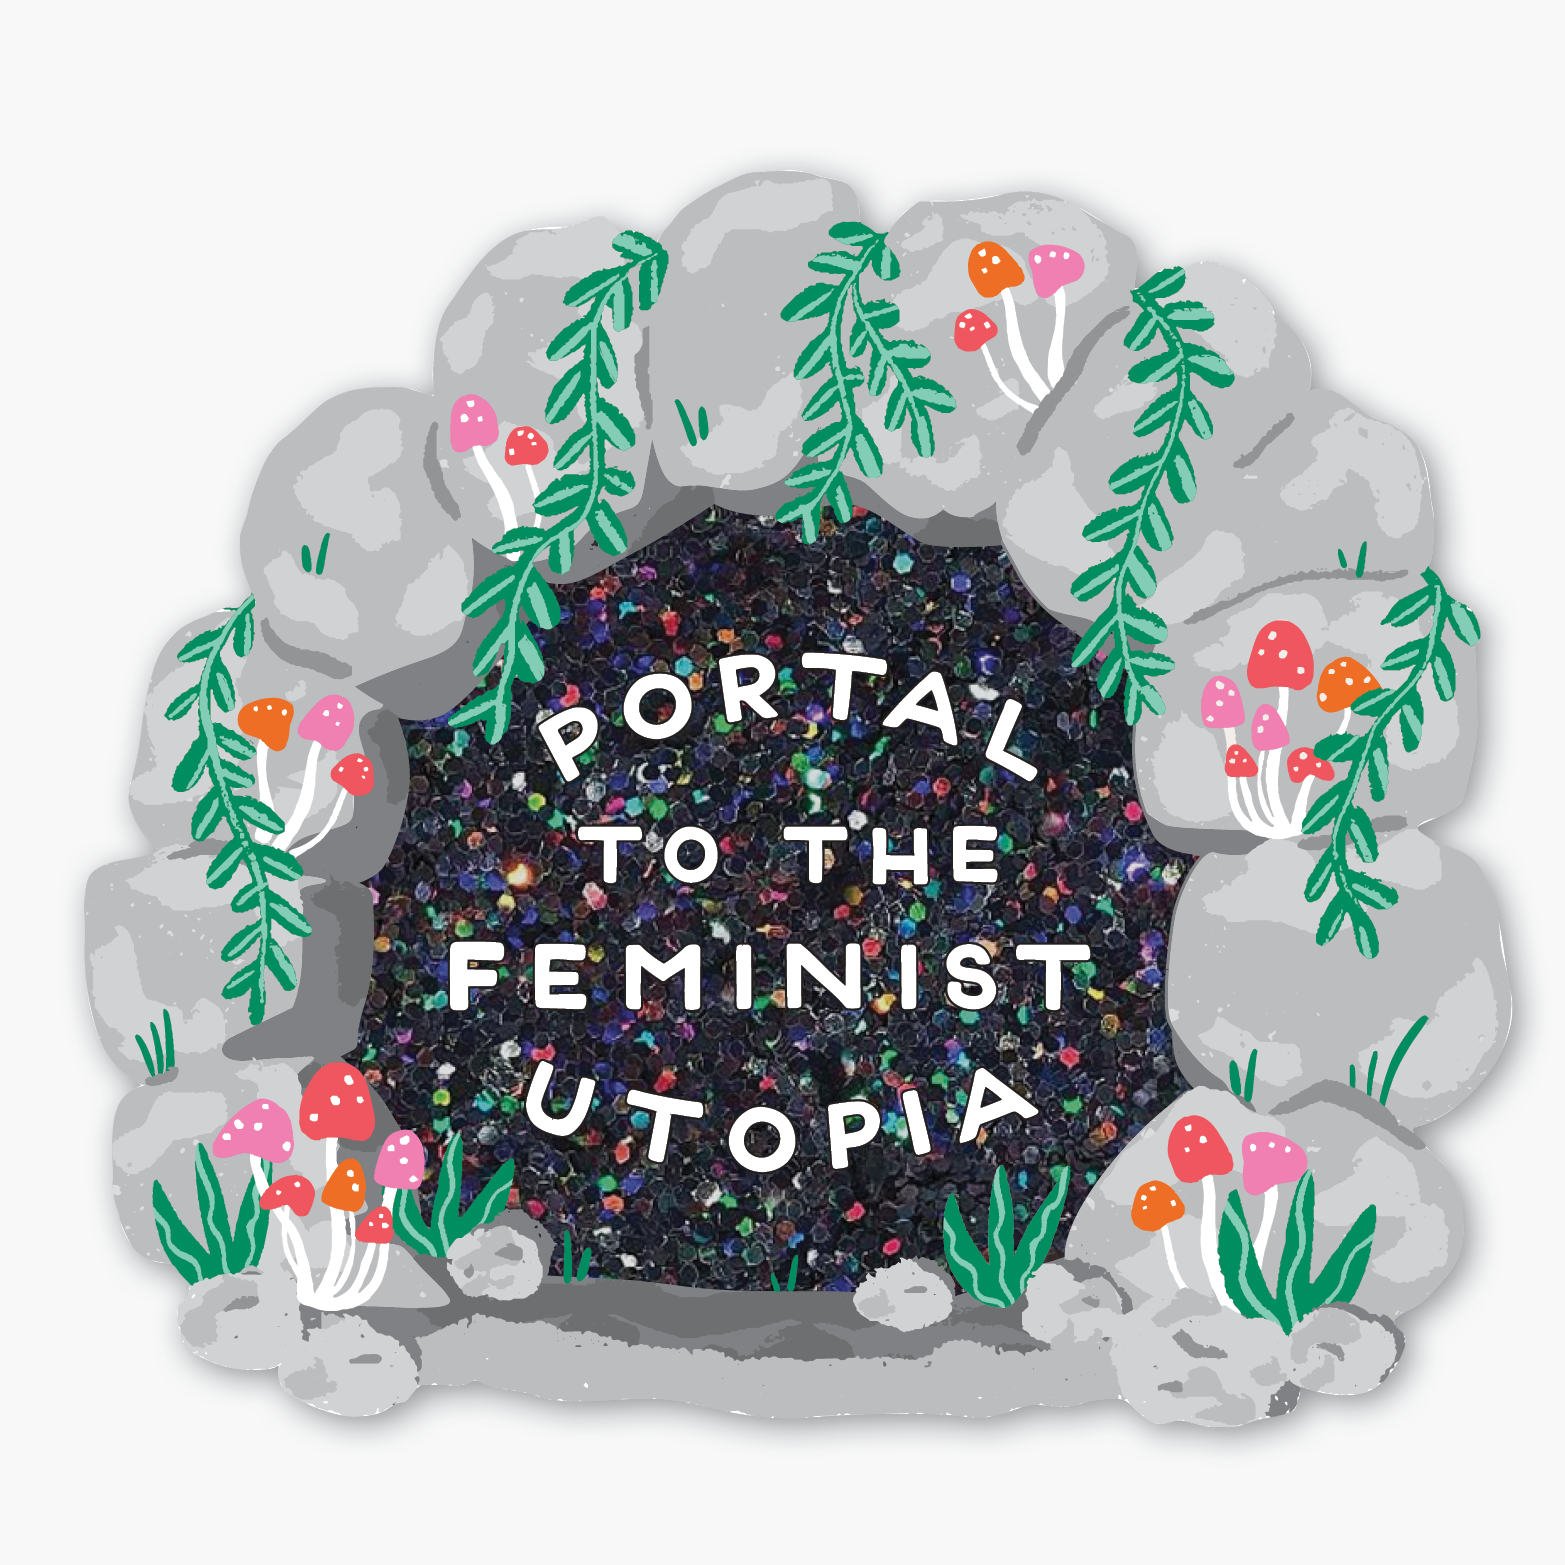 Feminist Utopia Glitter Sticker